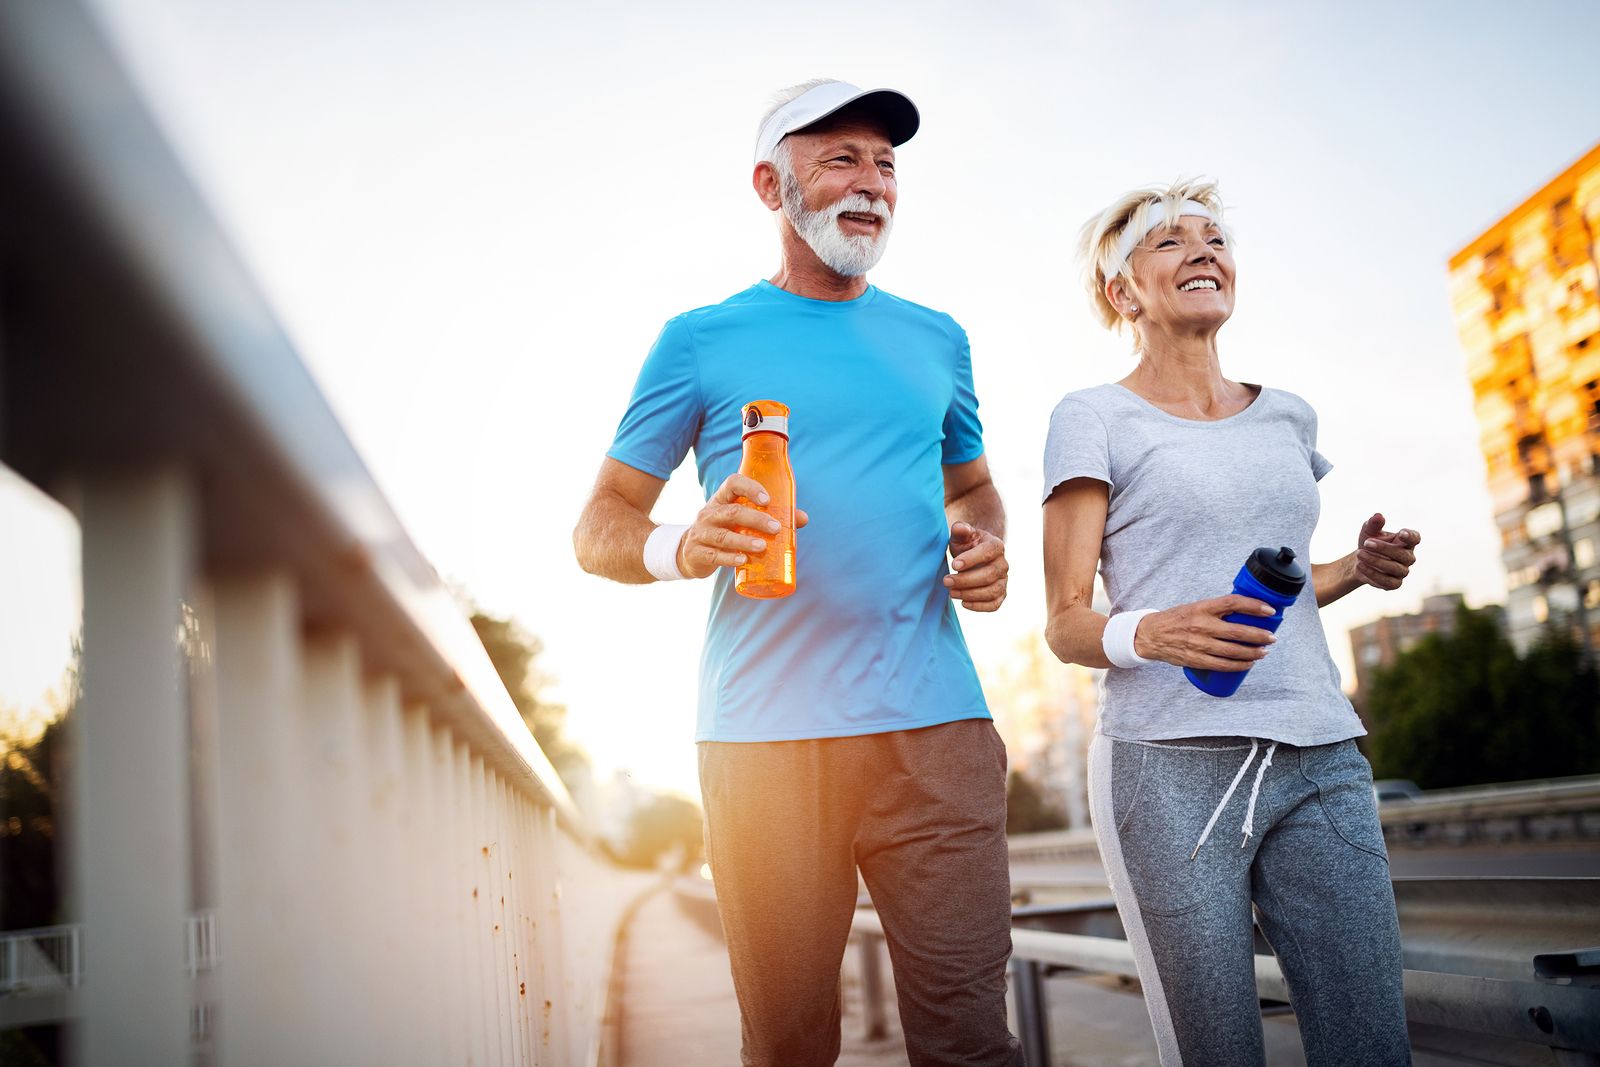 Corre a un ritmo suave y constante y apúntate al jogging (Bigstock)